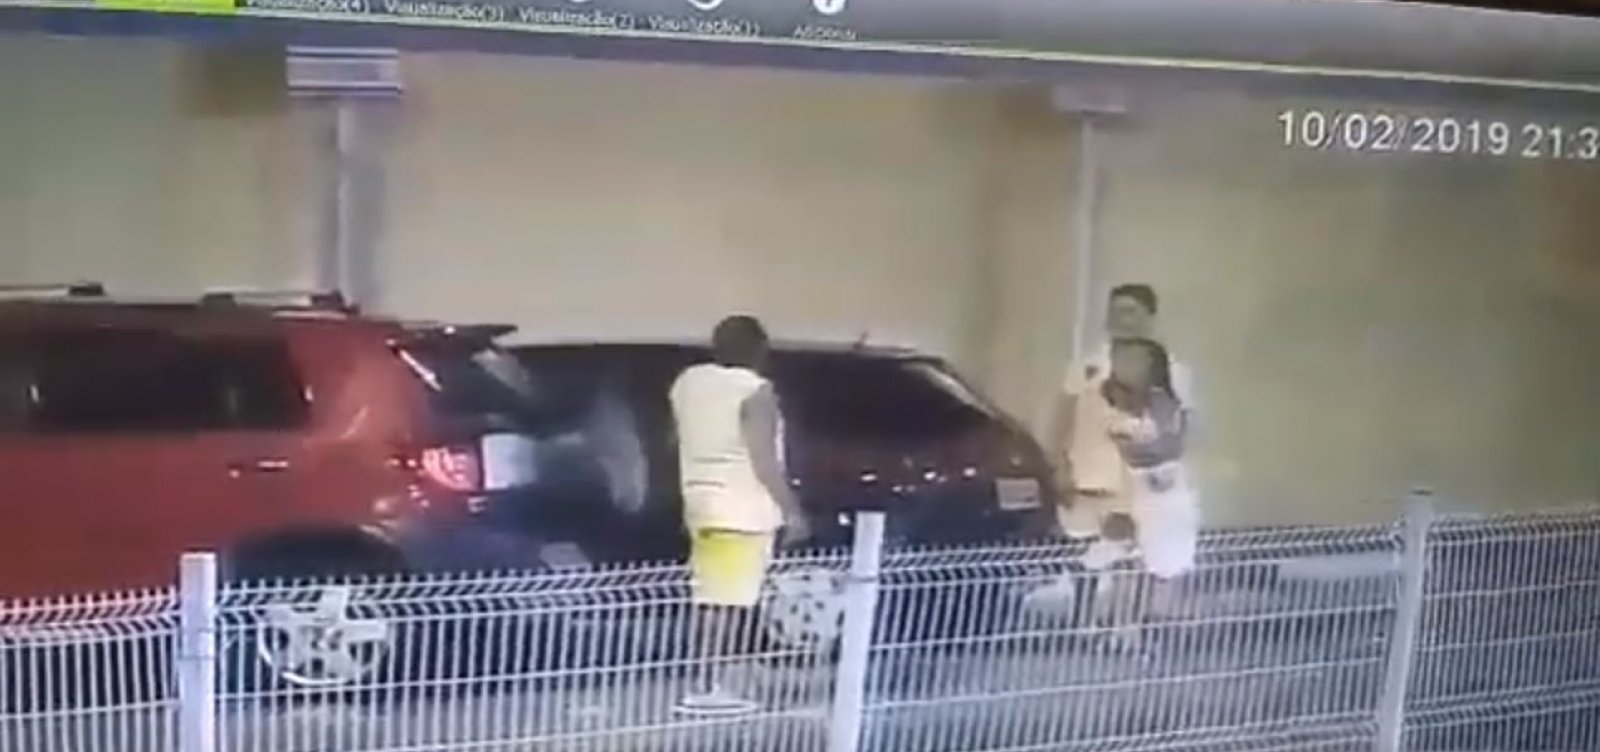 Policial é agredido por advogado em estacionamento de shopping; veja vídeo 